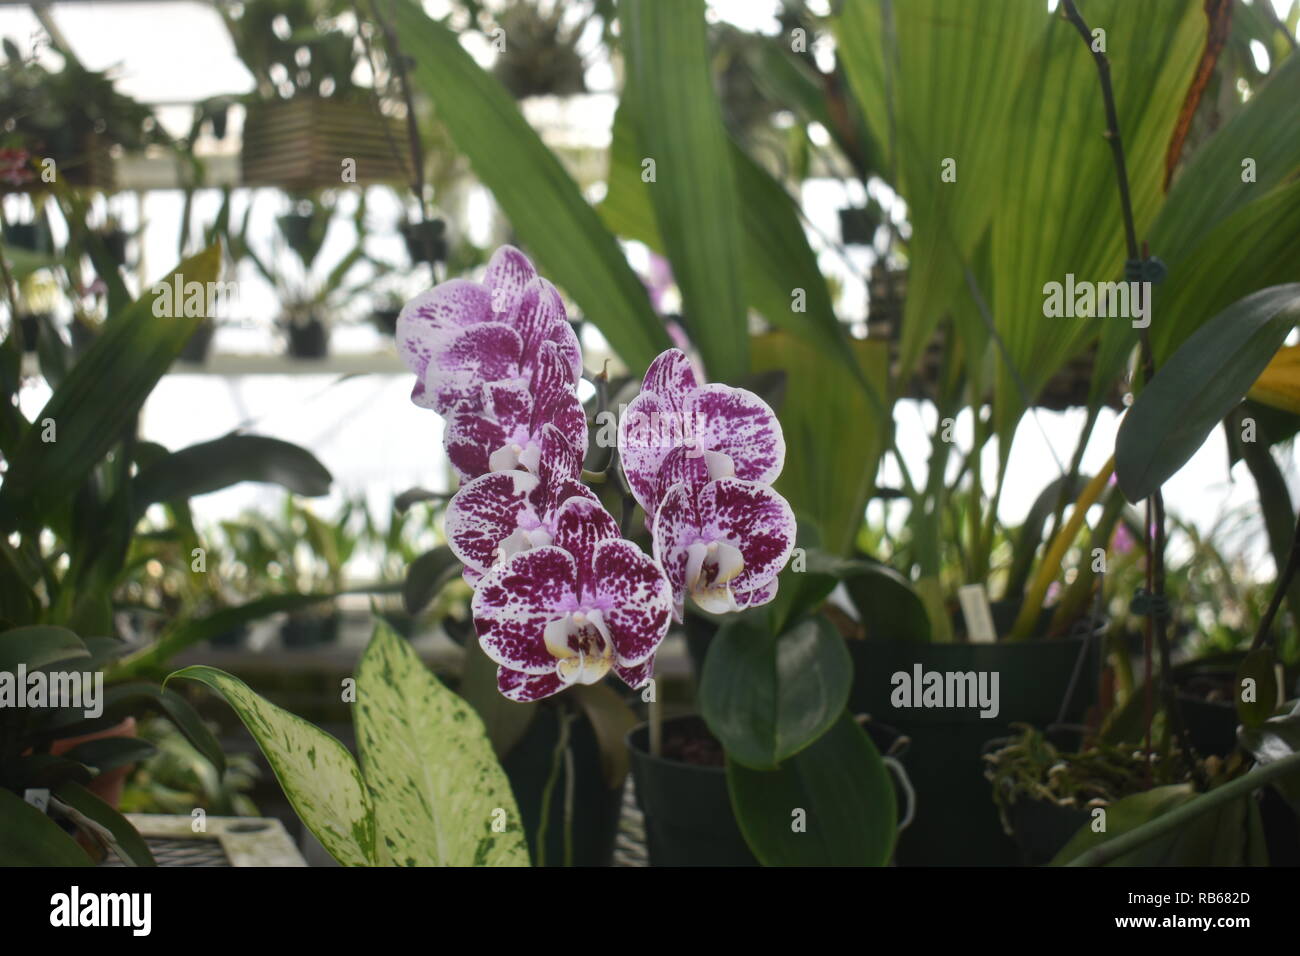 Violett und Weiß panaschierten Motte Orchideen - schönen und bunten Sorten von Orchideen in einer örtlichen Baumschule gewachsen Stockfoto